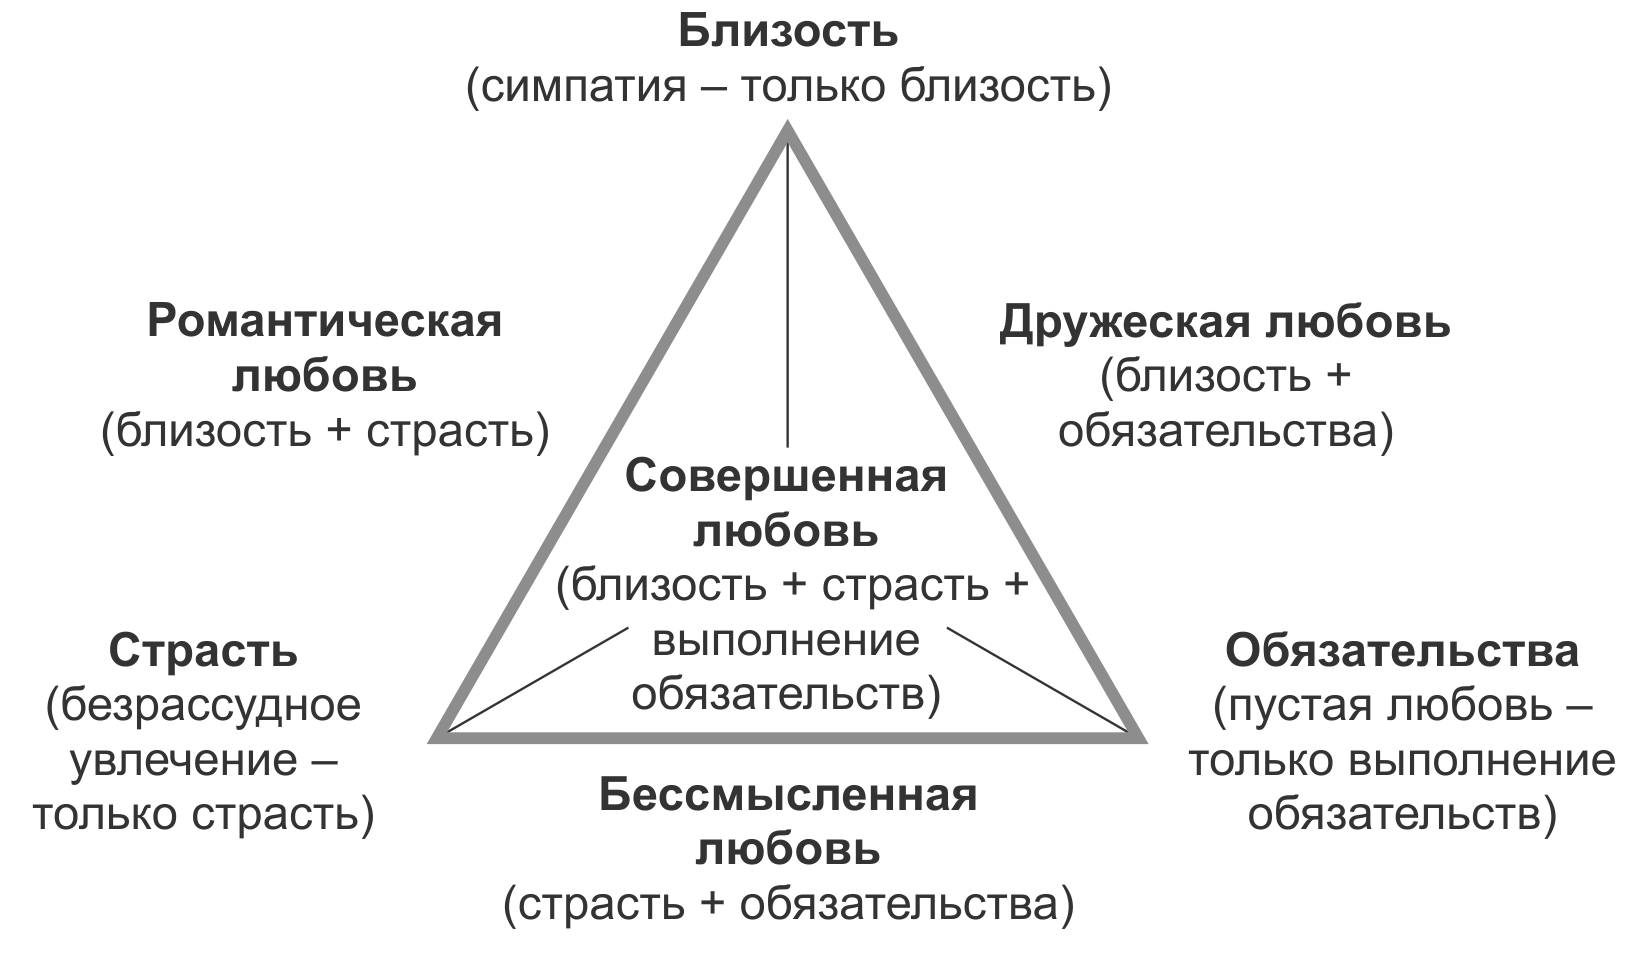 5 уровней близости. Стернберг трехкомпонентная теория любви. Виды близости в психологии. Треугольник видов любви.